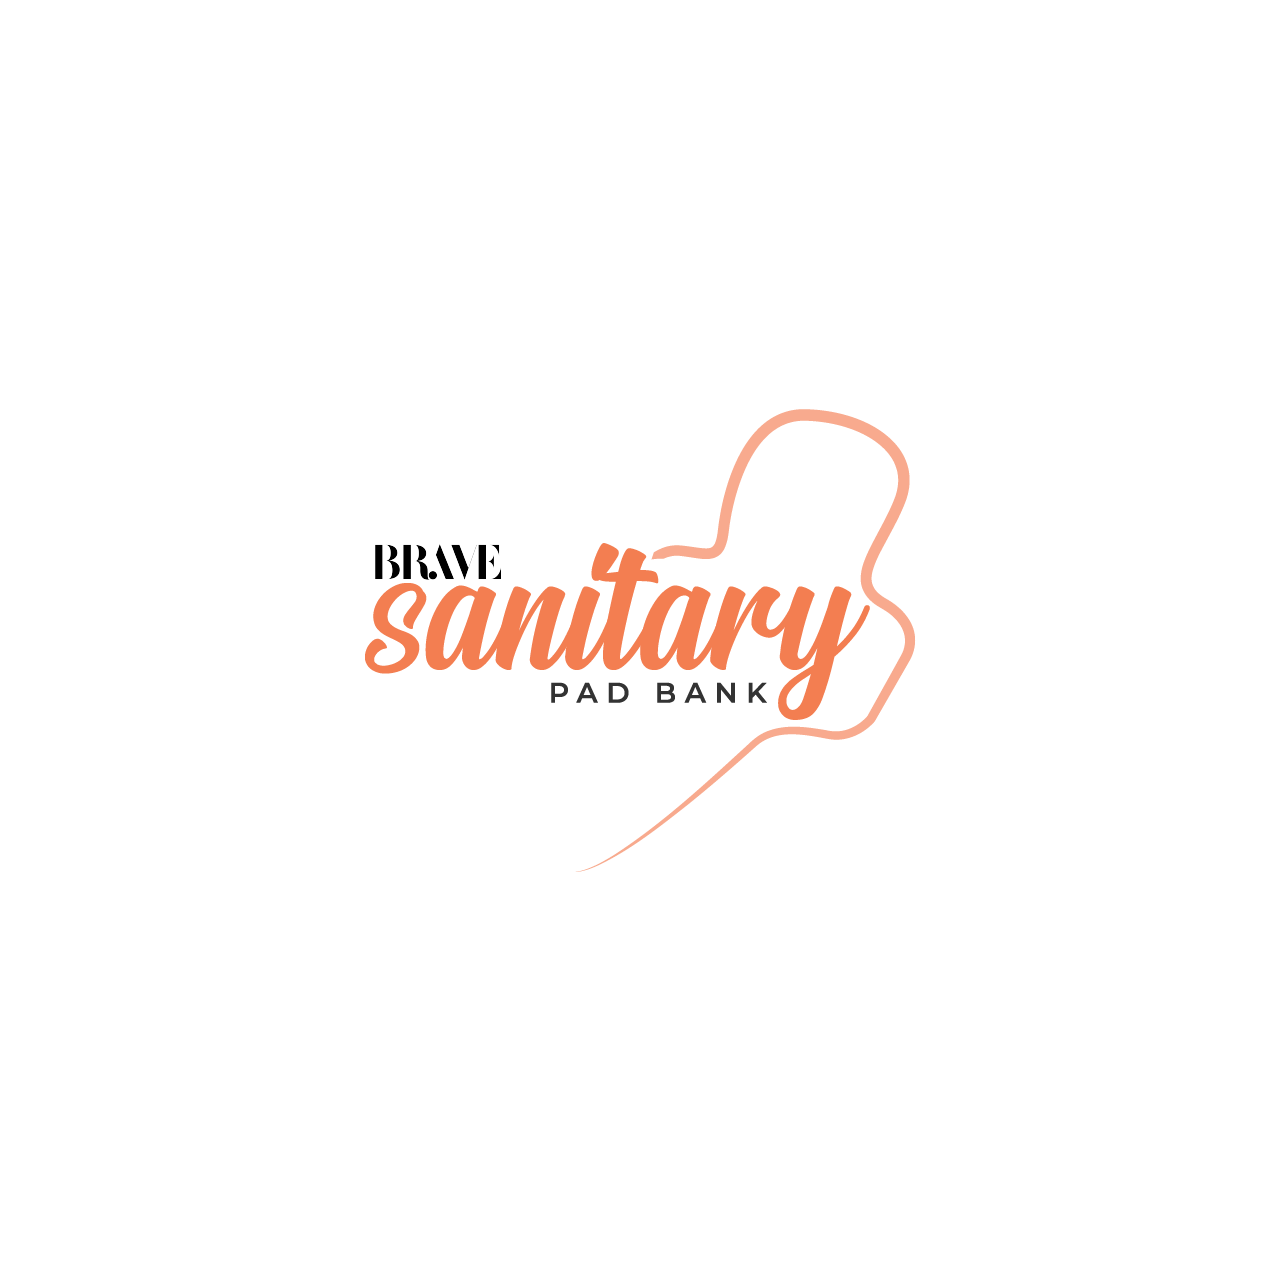 sanitary-pad-bank img